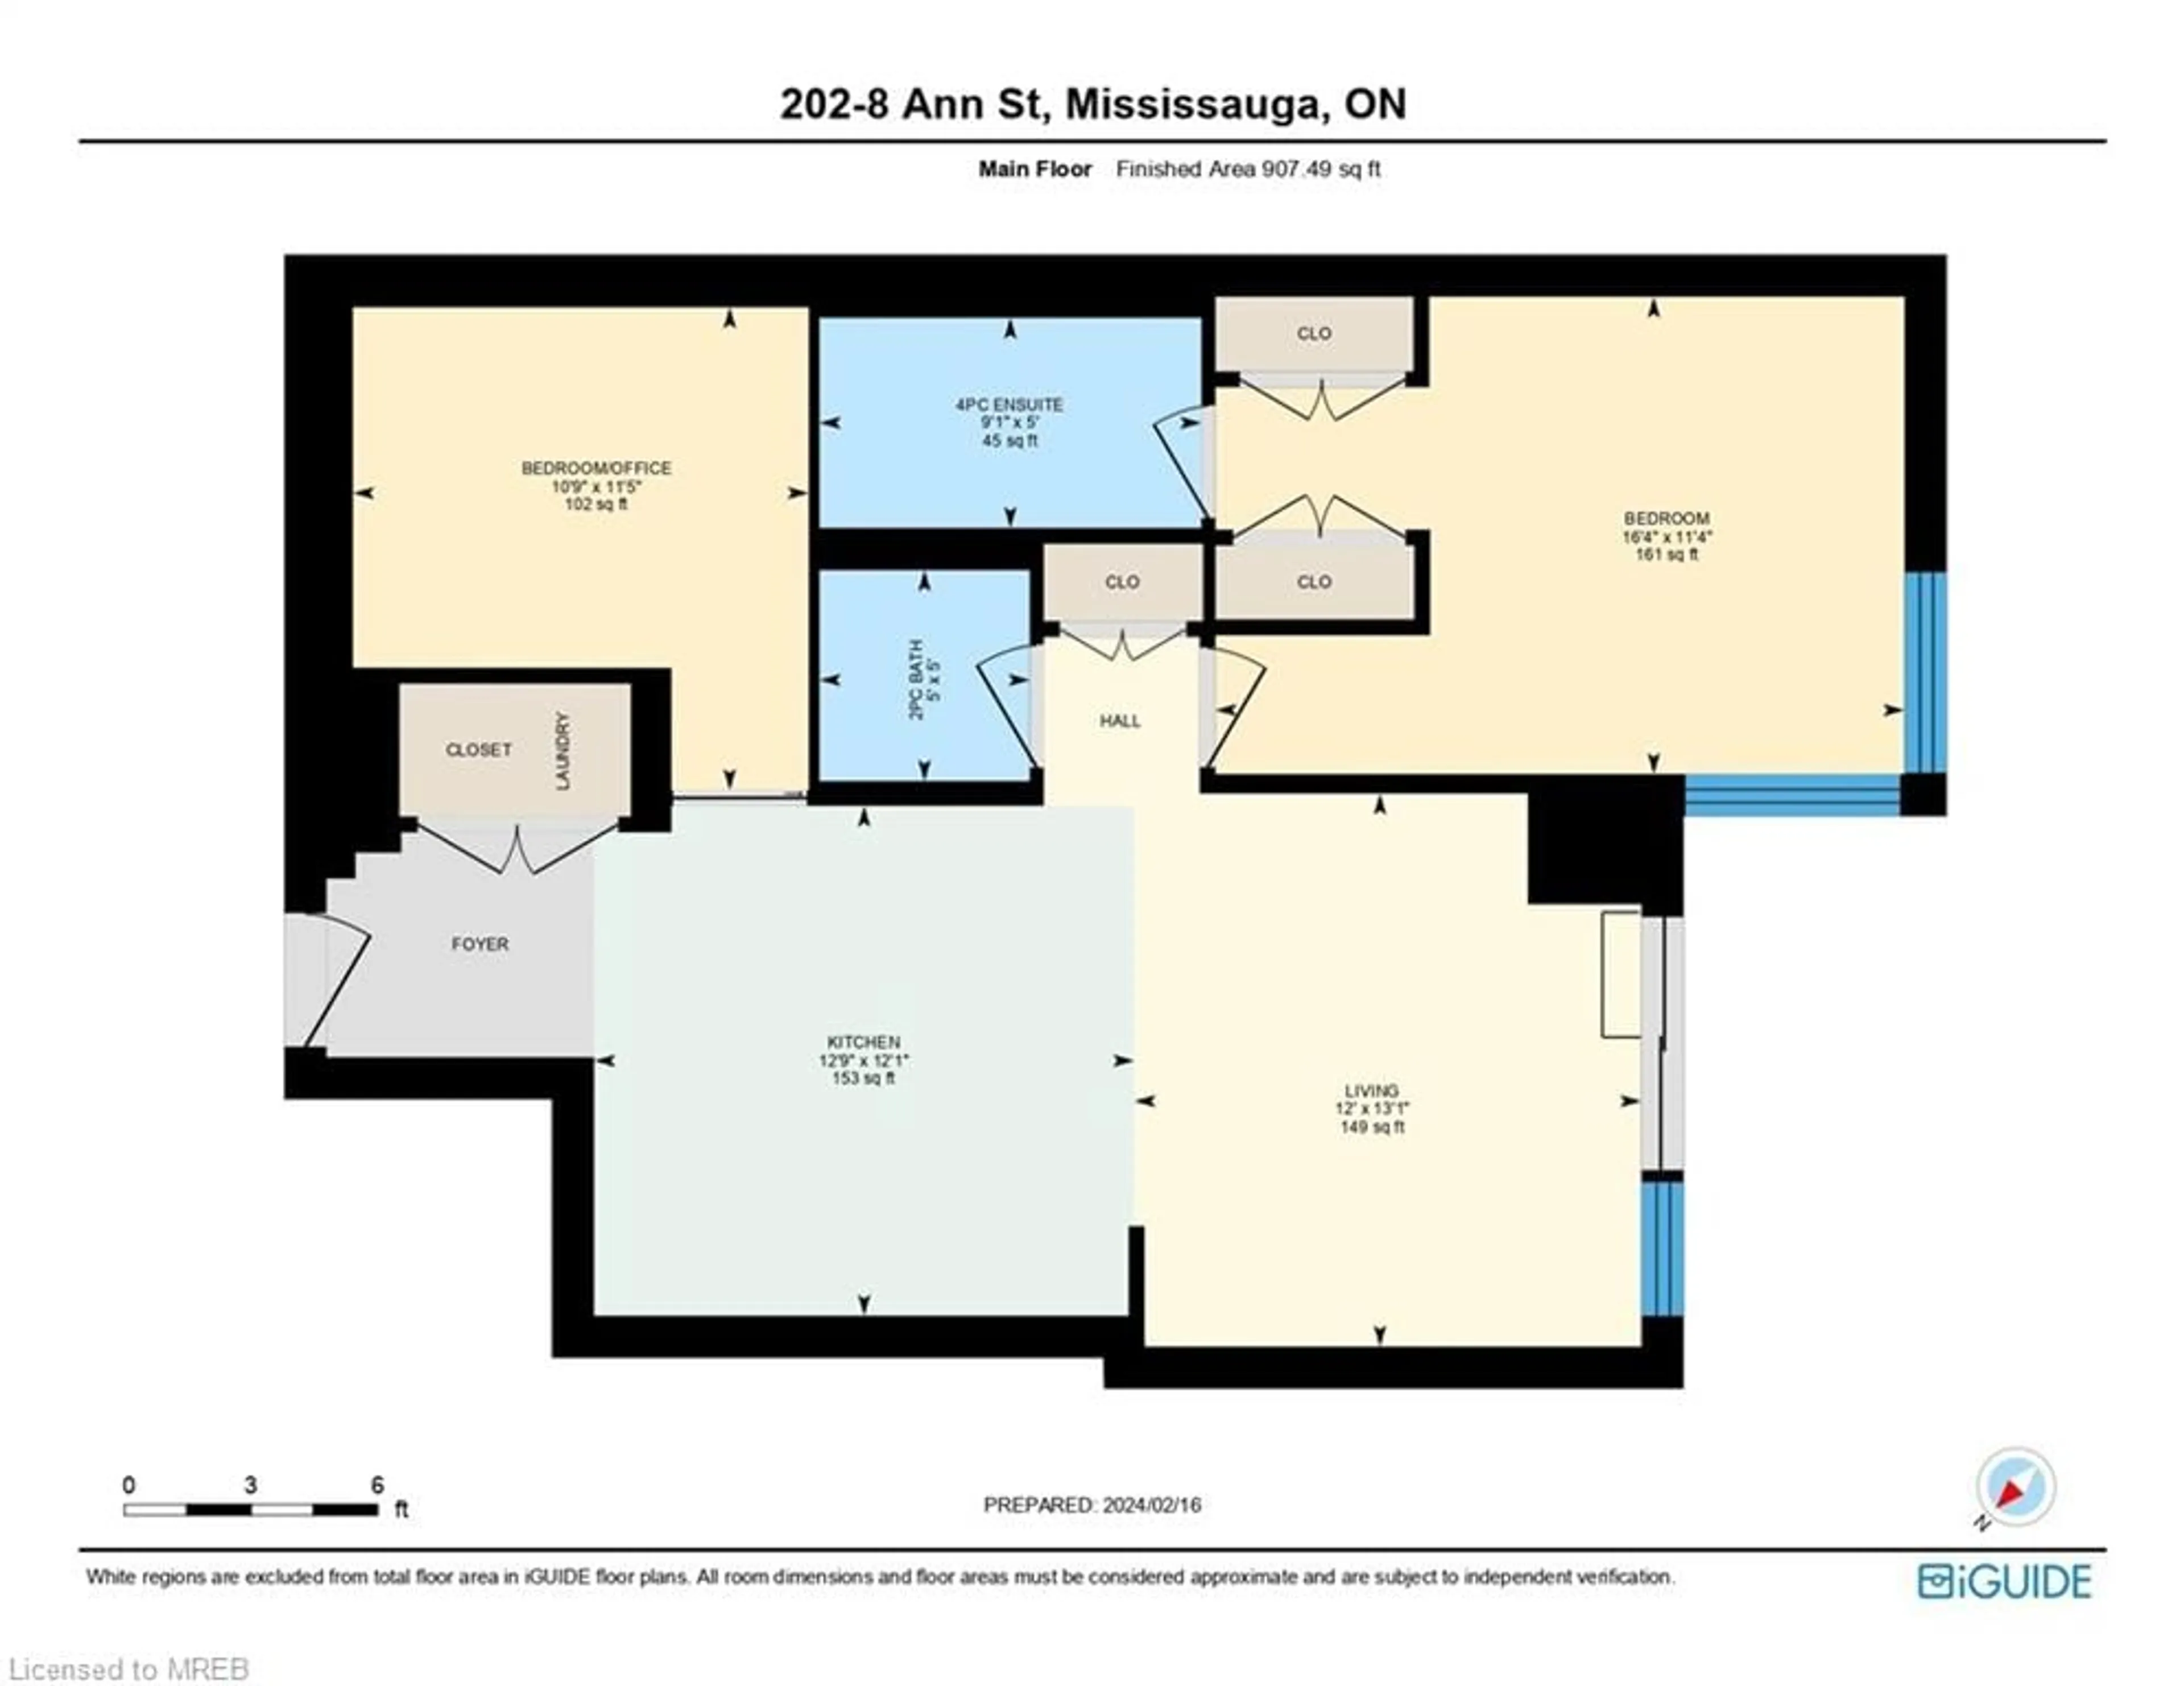 Floor plan for 8 Ann St #202, Mississauga Ontario L5G 0C1